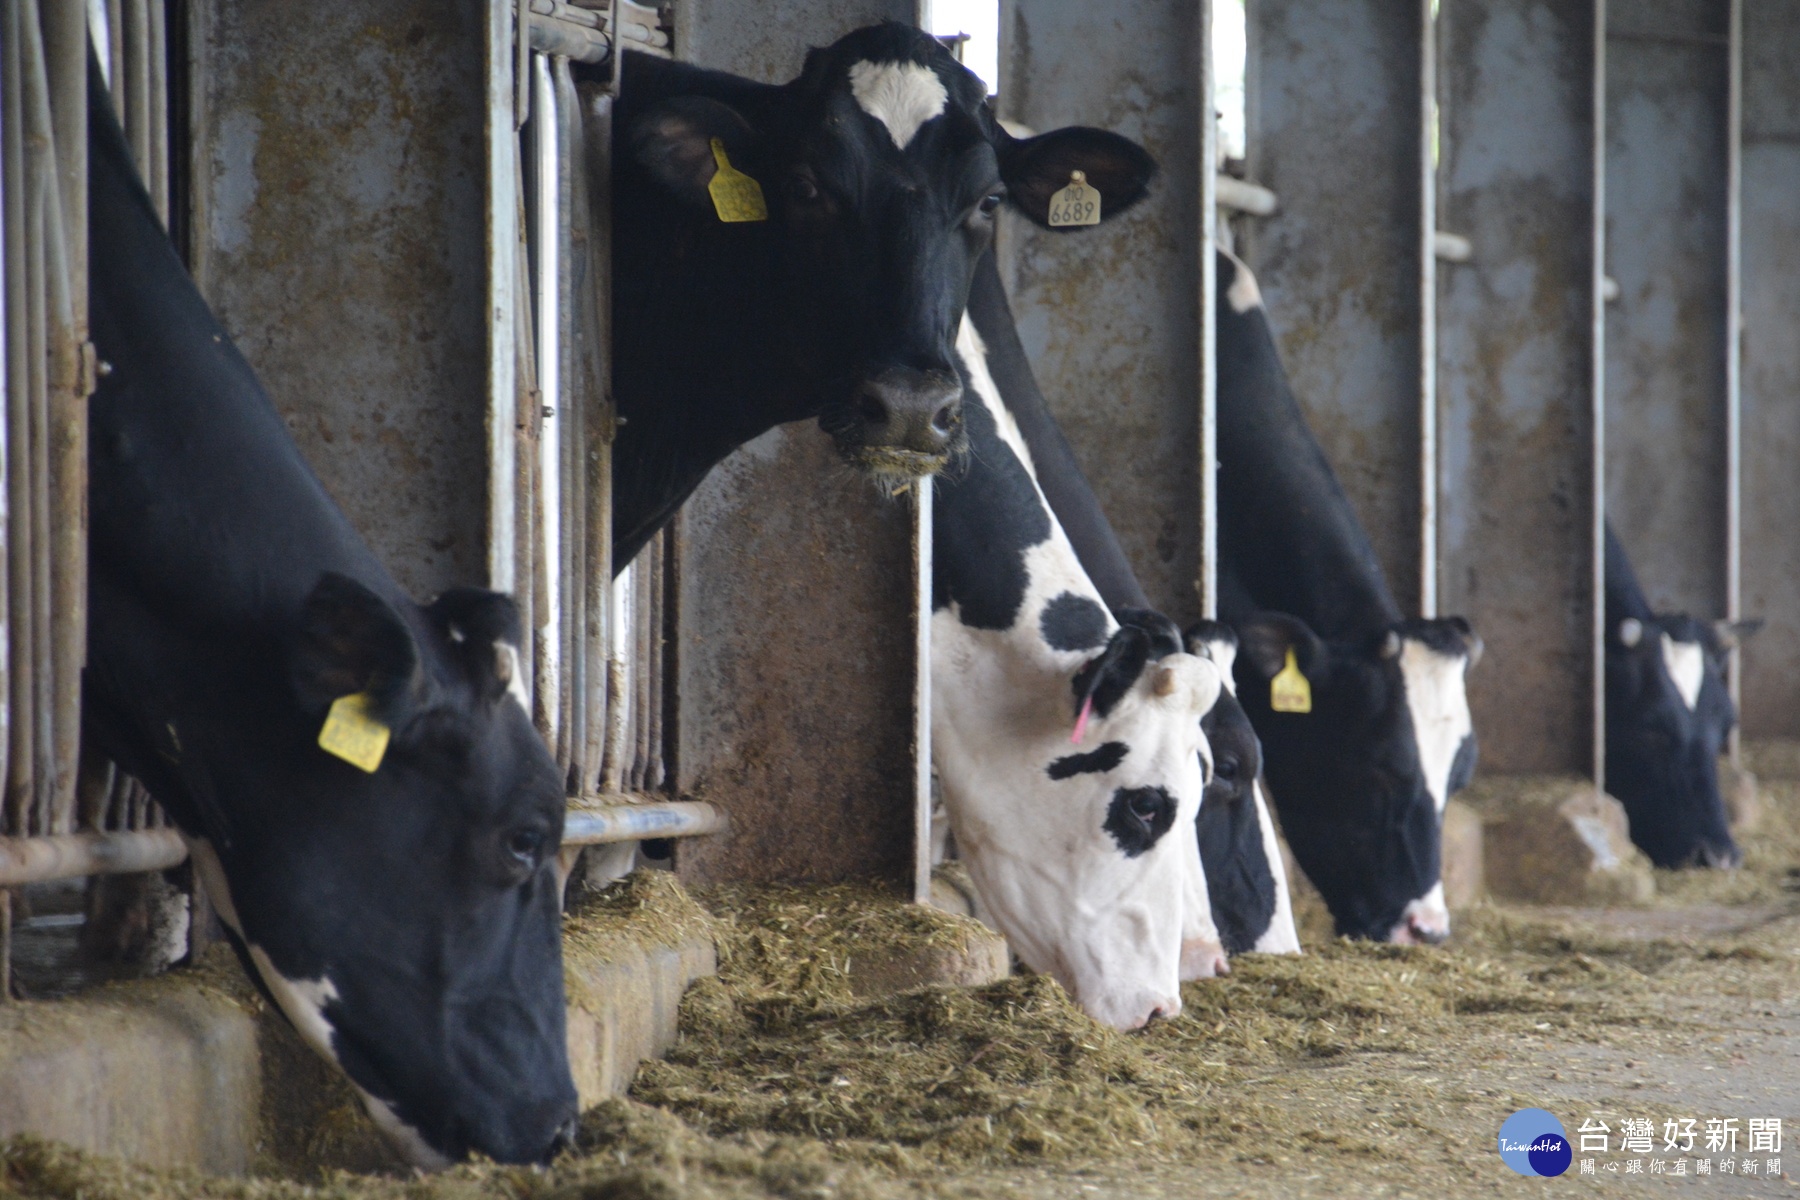 牧場種電，業者說乳牛較喜愛做愛做的事。(記者/黃芳祿攝)